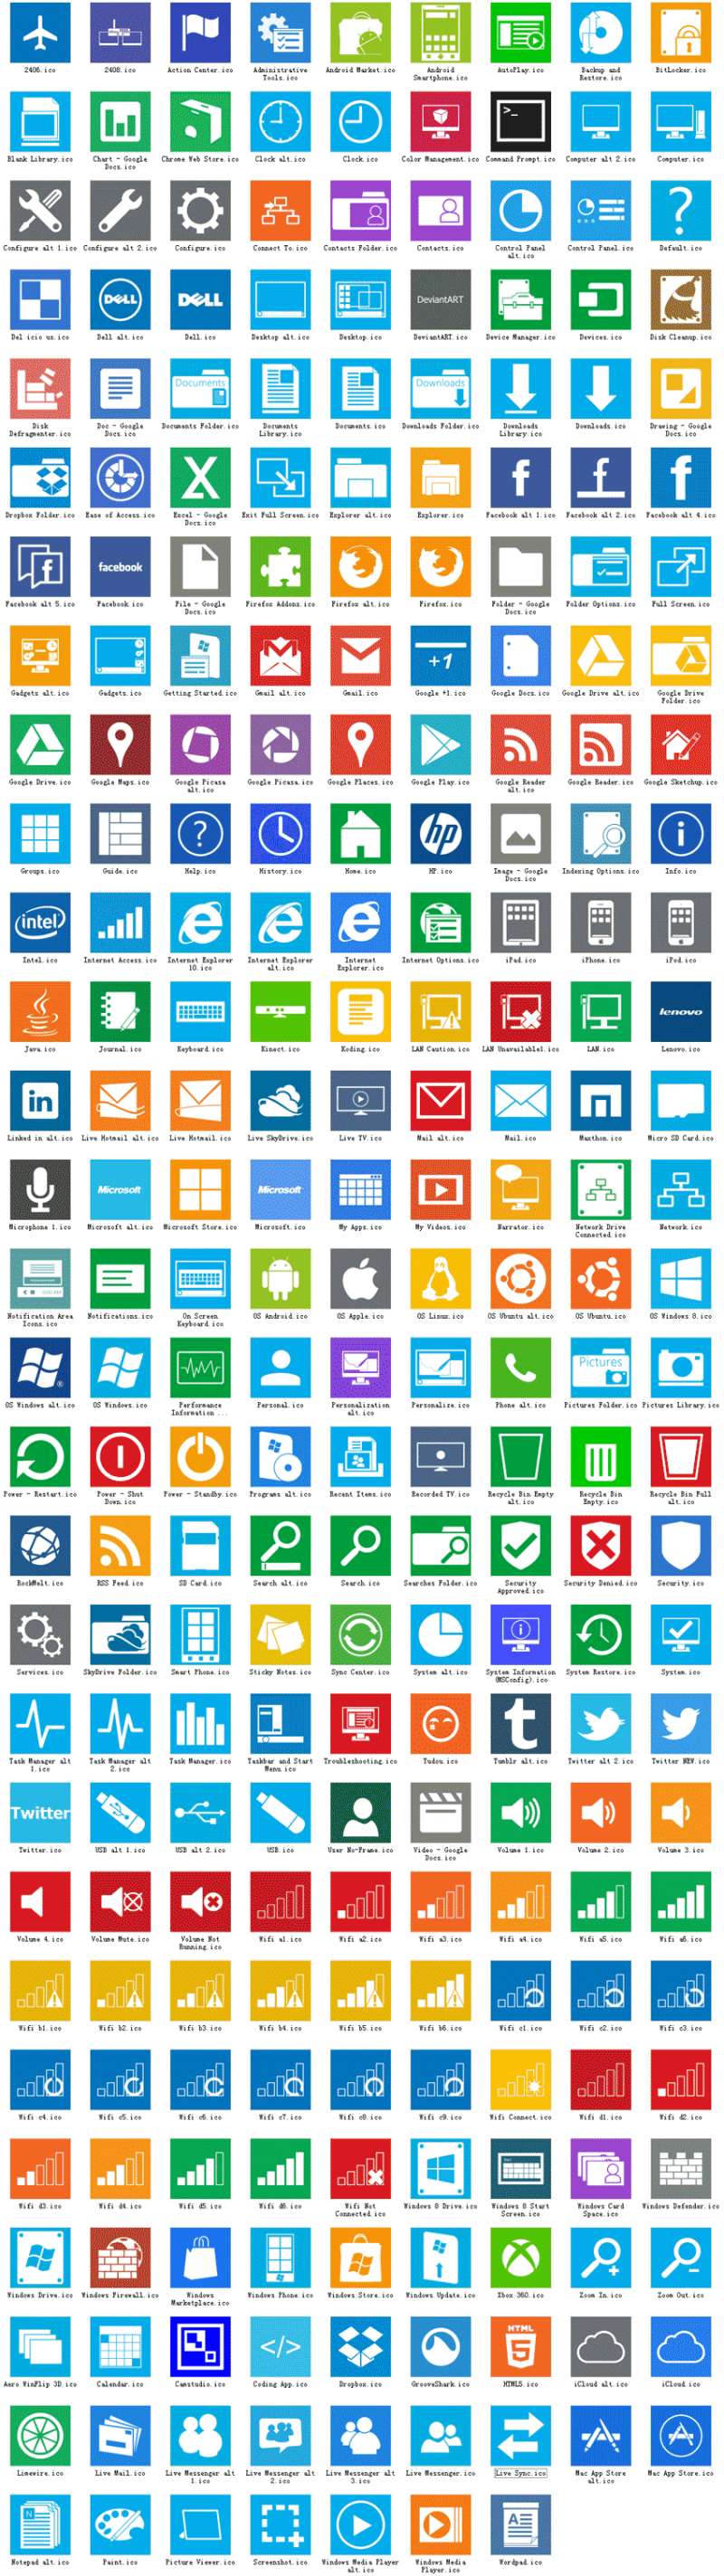 扁平化modern风格的电脑桌面工具包图标ico下载